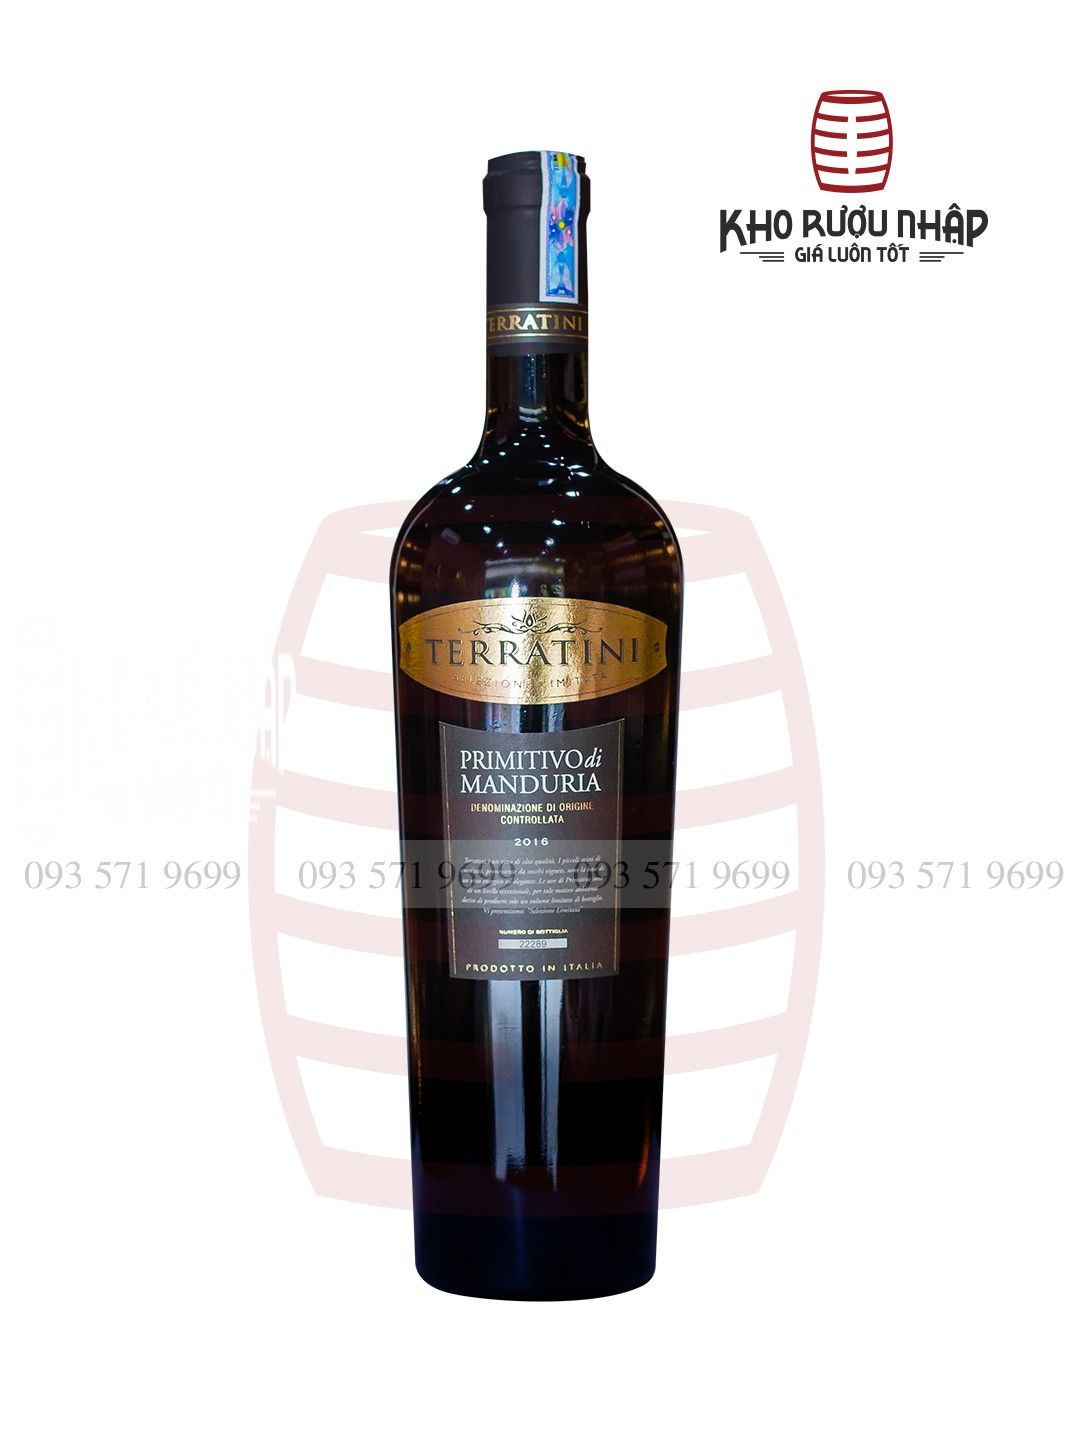 Rượu Vang Ý Terratini DOC – HD-0105 Cao Cấp Nhập Khẩu